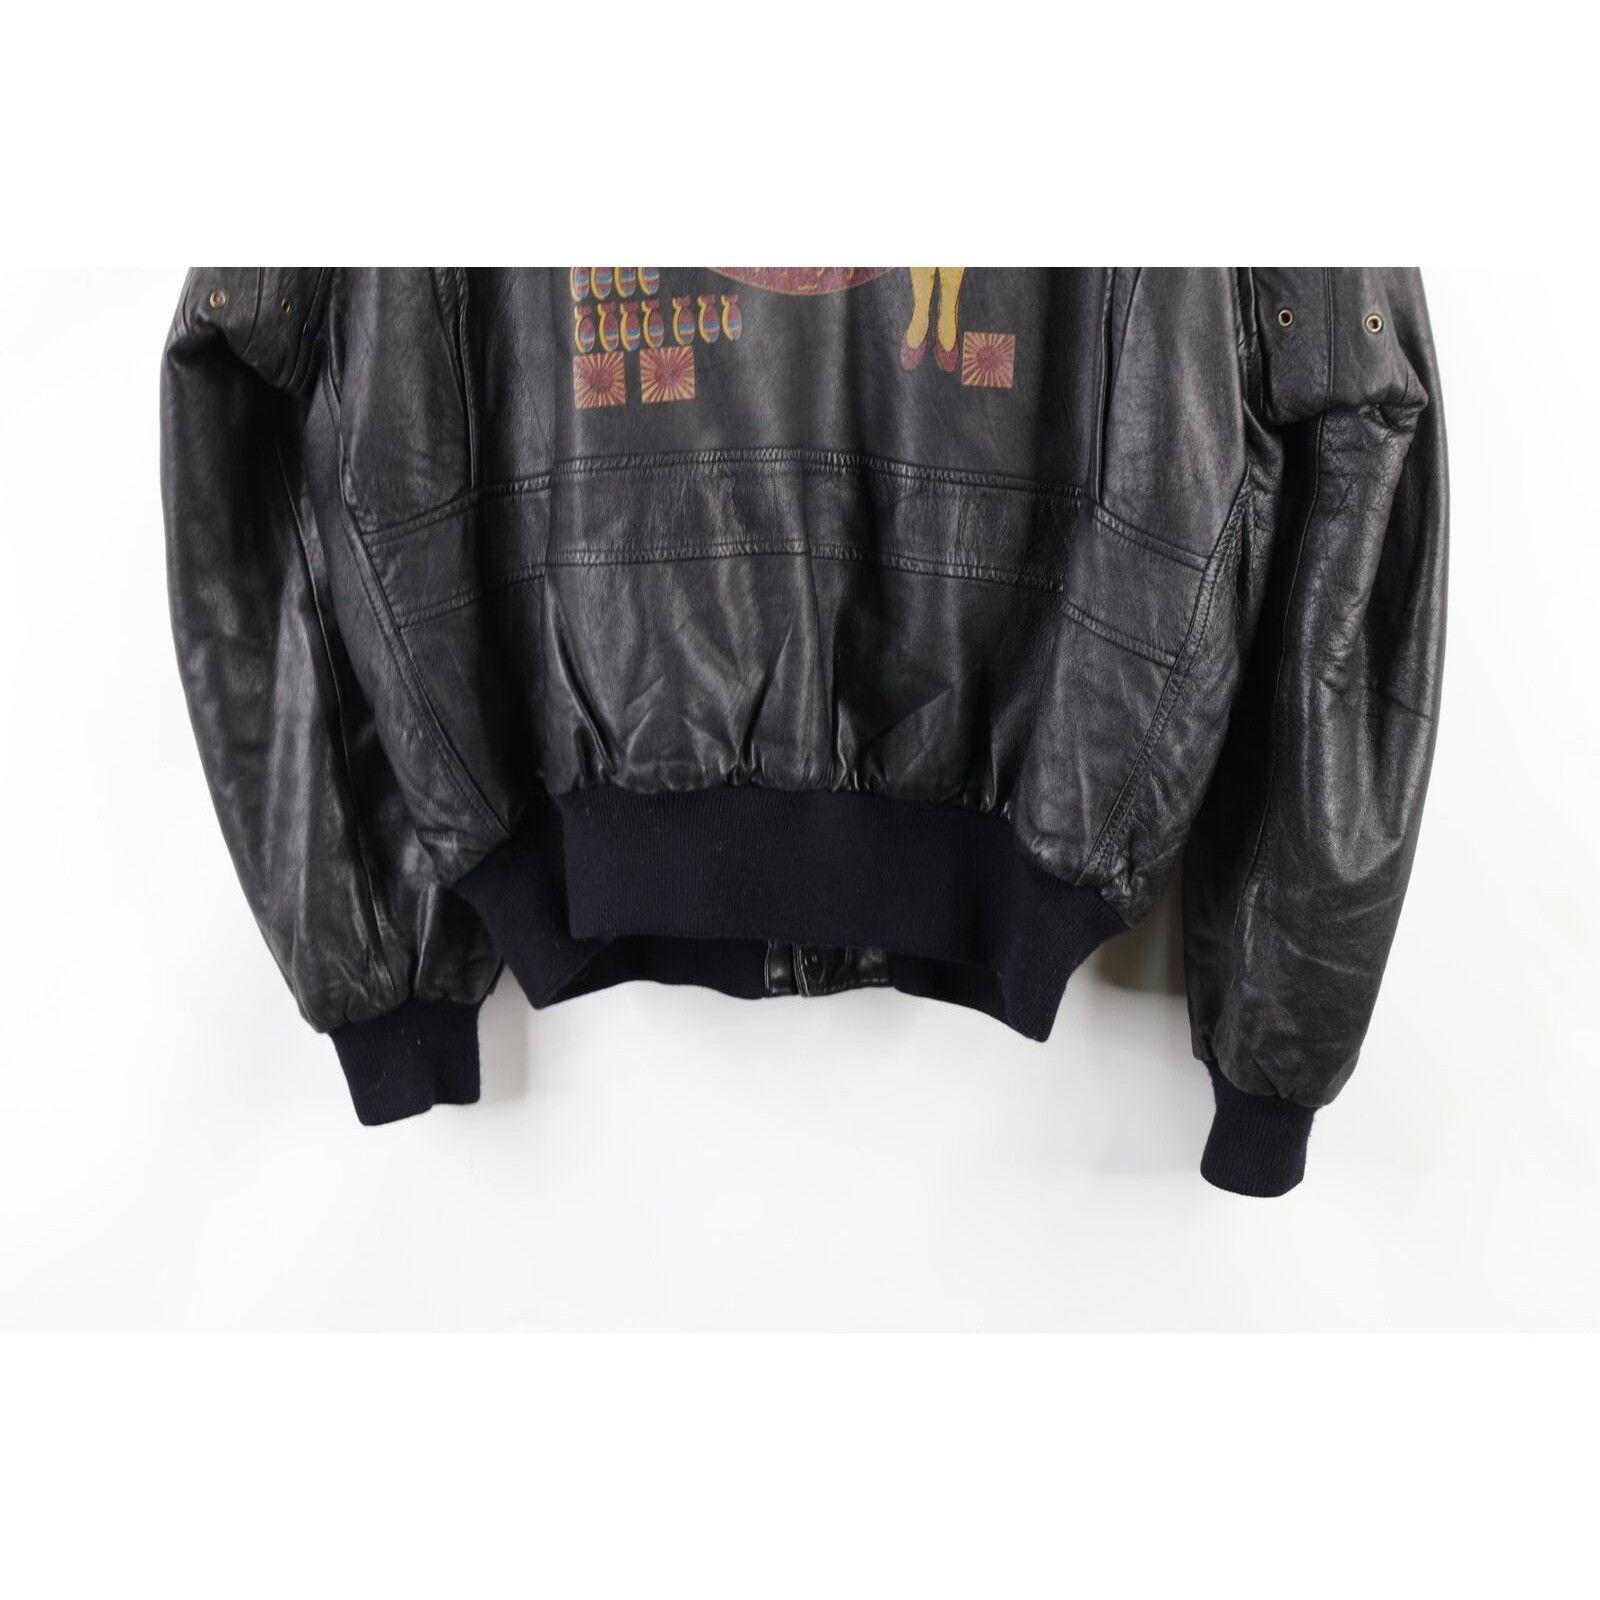 Vintage Vintage Surprise Attack Nuke Japan Souvenir Leather Jacket Size US M / EU 48-50 / 2 - 9 Thumbnail